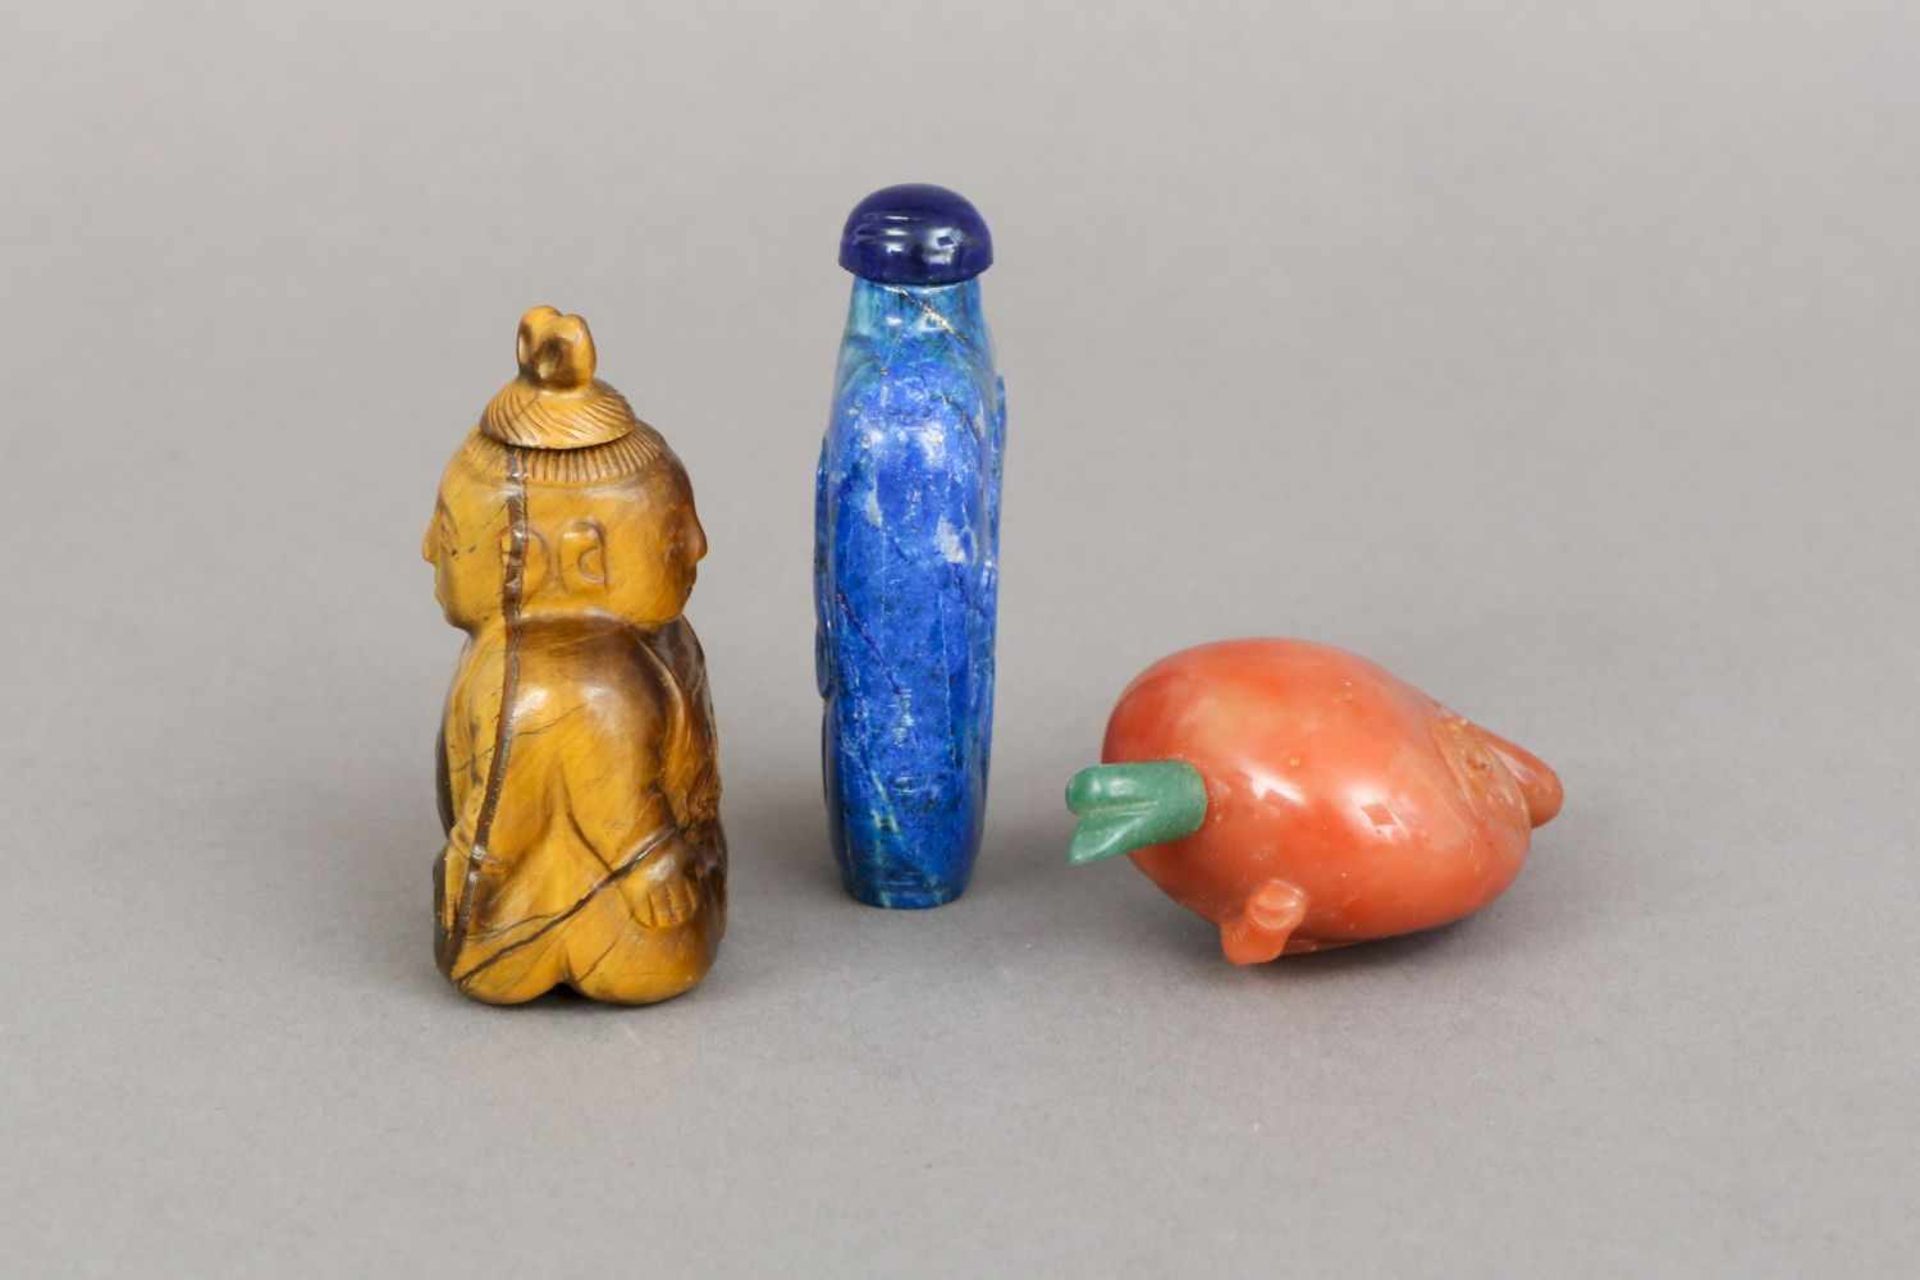 3 chinesische Snuff-bottles, Stein, geschnitzt1x Tigerauge in Form eines Buddhas (beidseitig), 1 x - Bild 3 aus 3